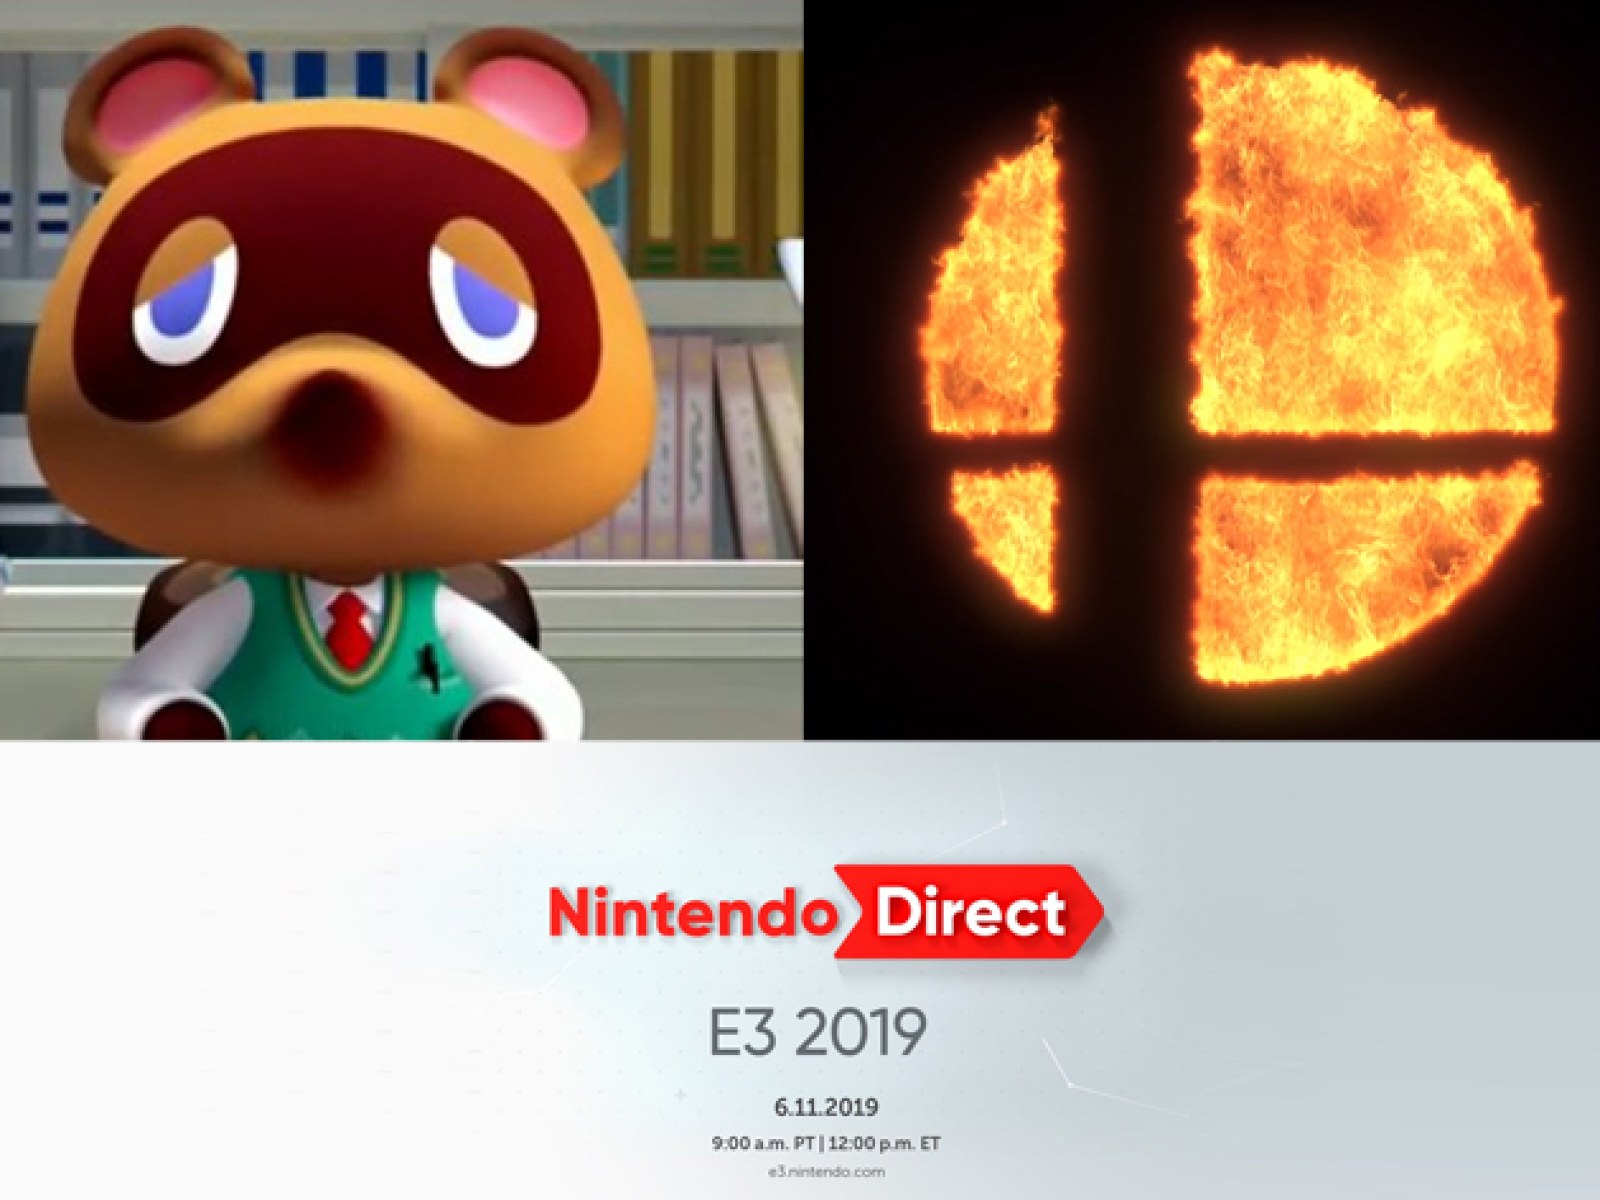 Nintendo Direct for E3 2019 